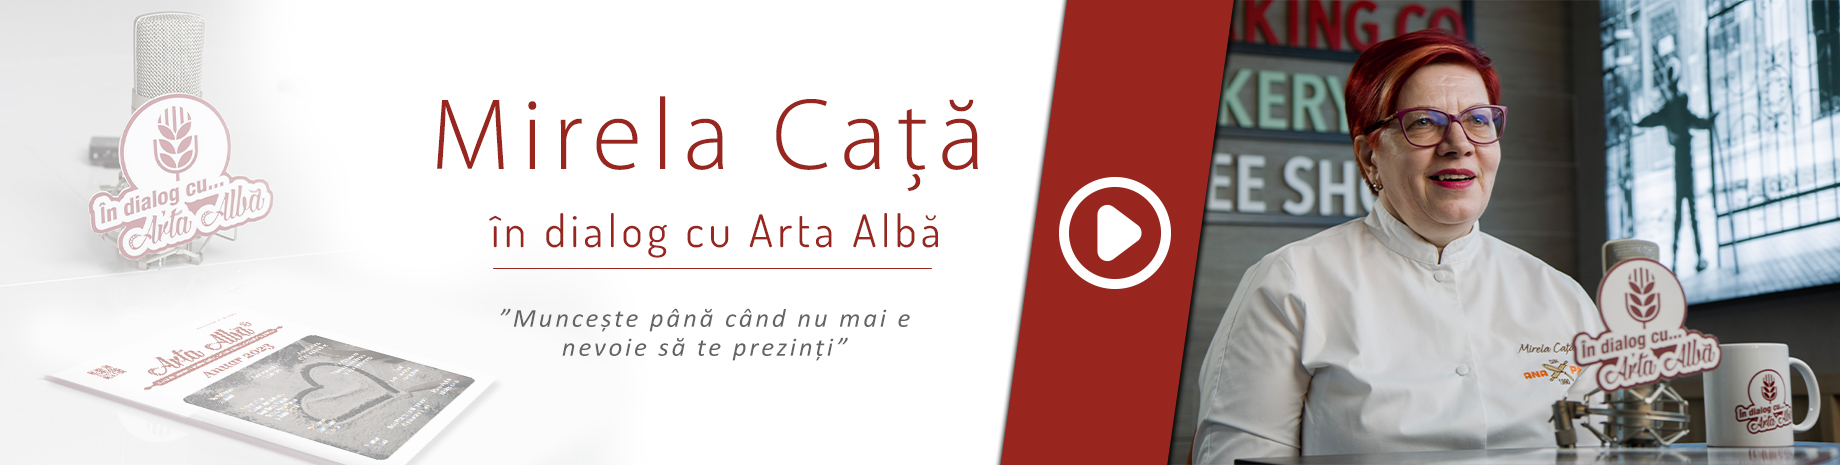 Mirela Cata in dialog cu Arta Alba